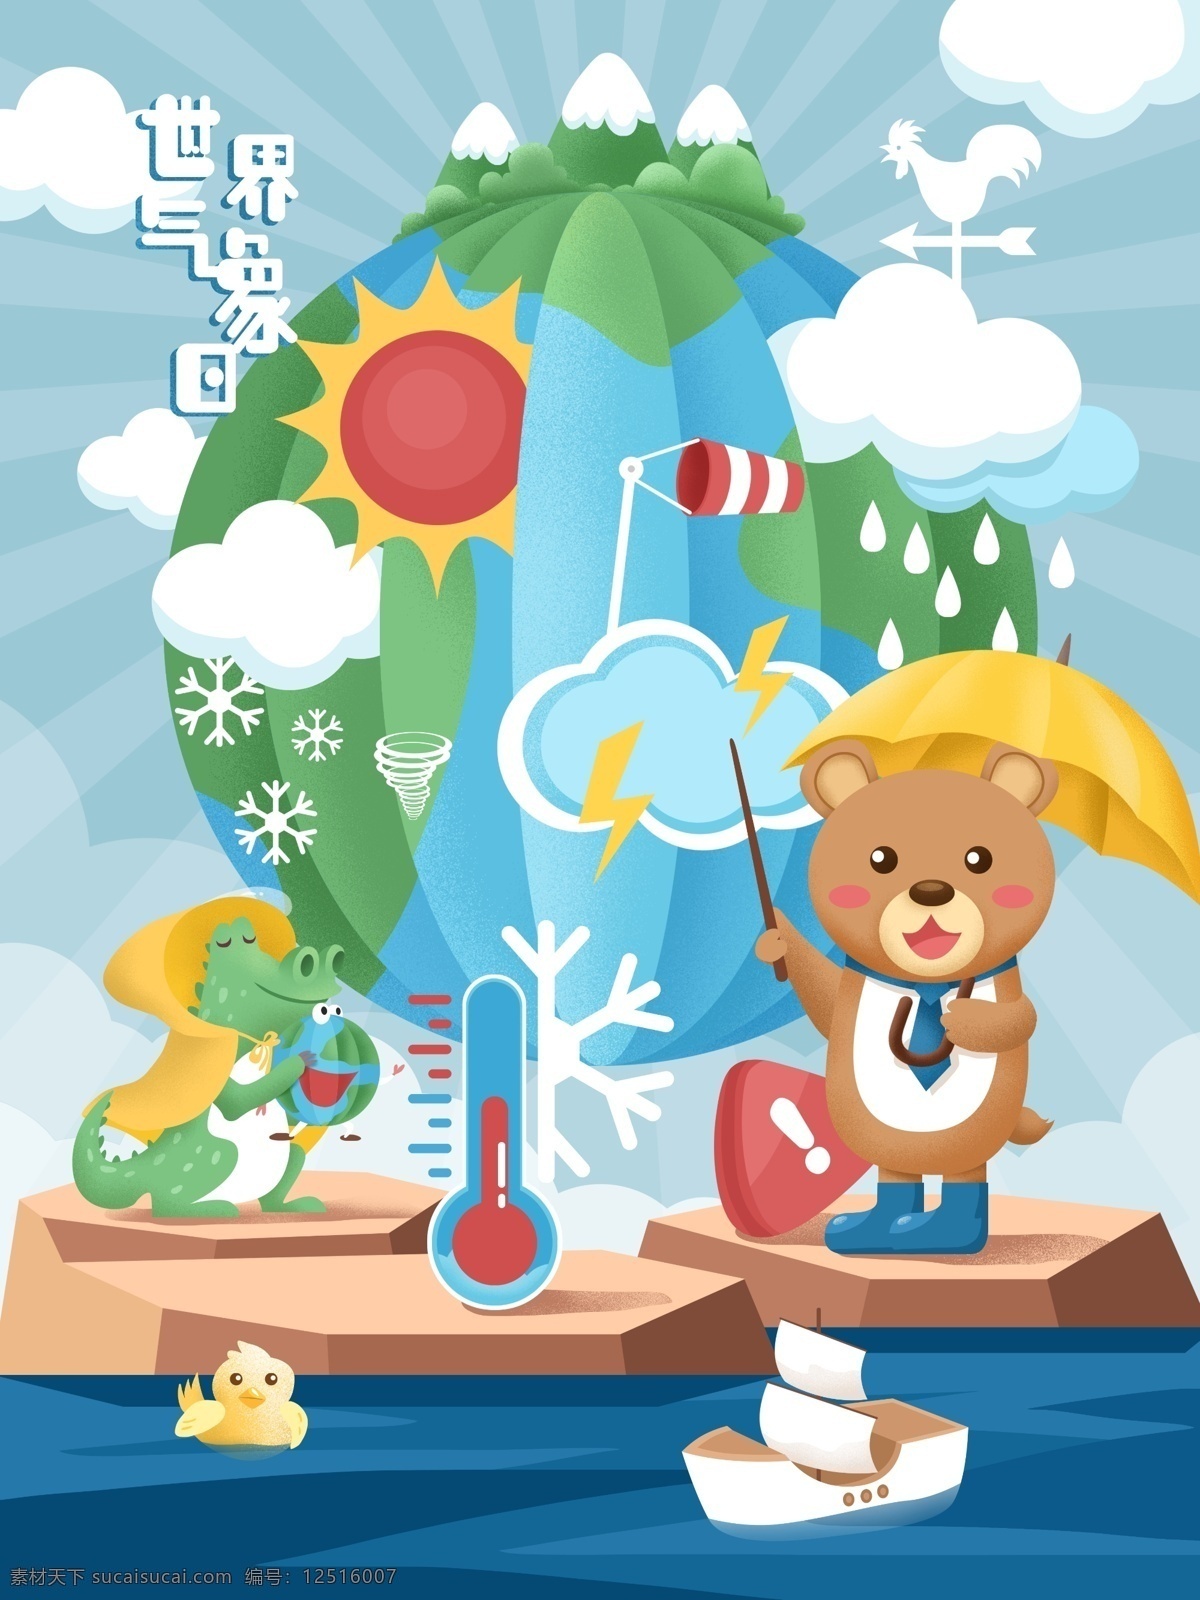 原创 手绘 插画 世界 气象 日 地球 太阳 蓝天白云 动物 手绘插画 气象日 世界气象日 天气 熊